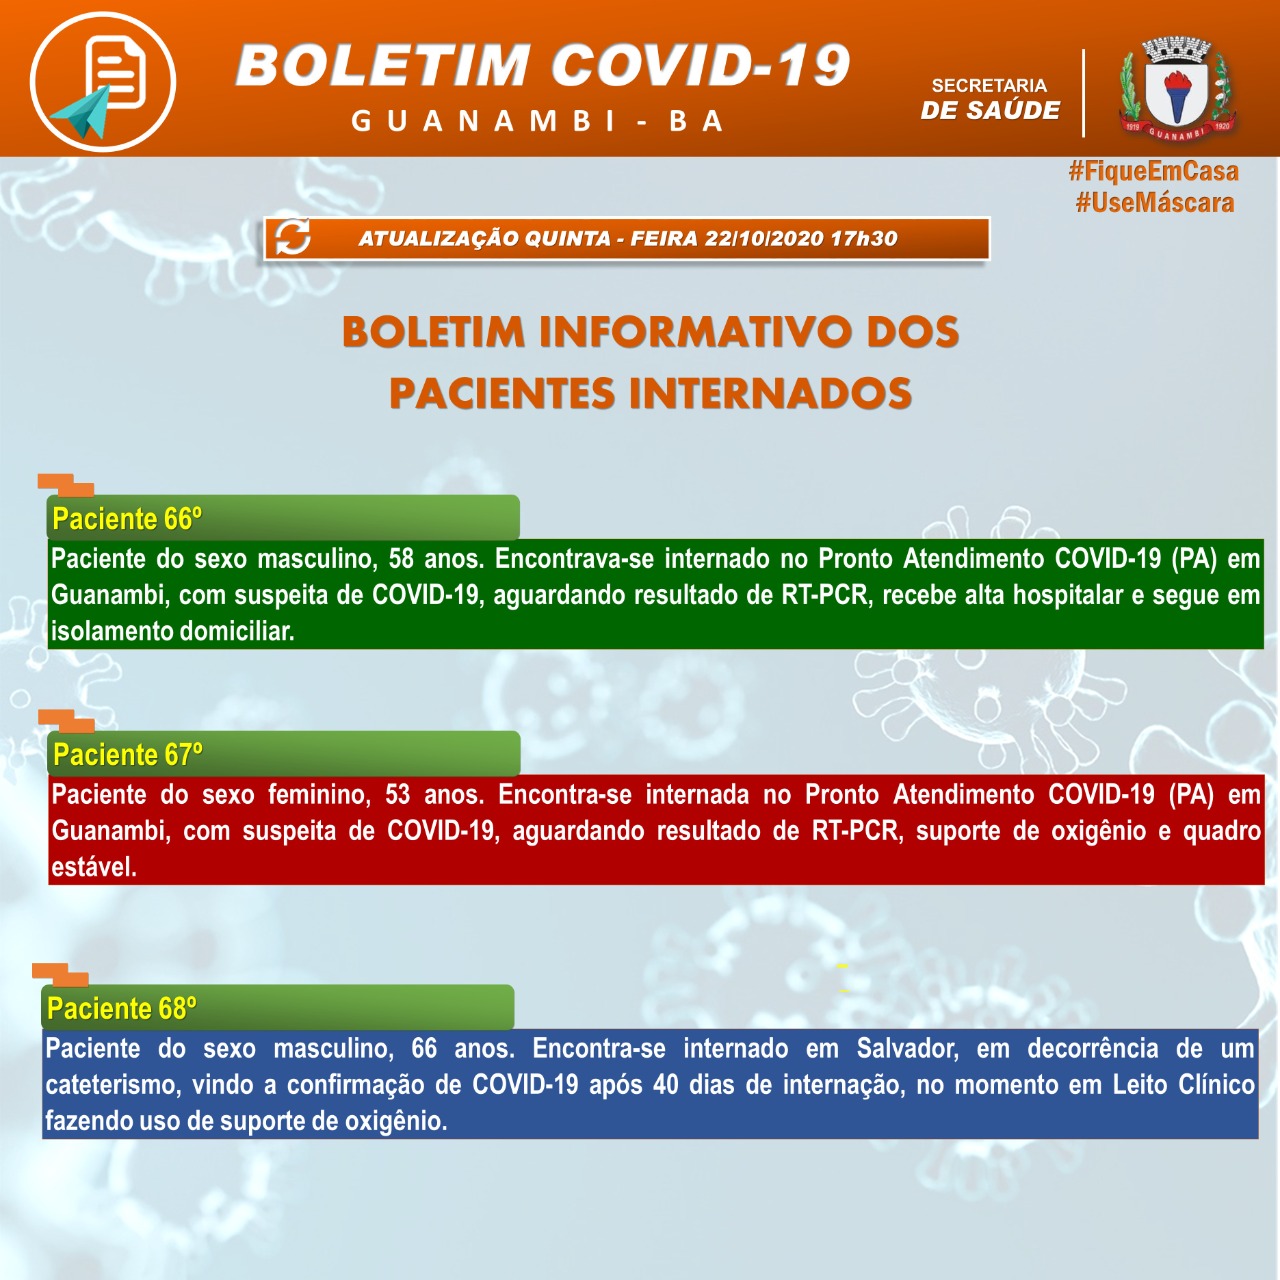 Treze casos da Covid-19 foram registrados em Guanambi nesta quinta-feira